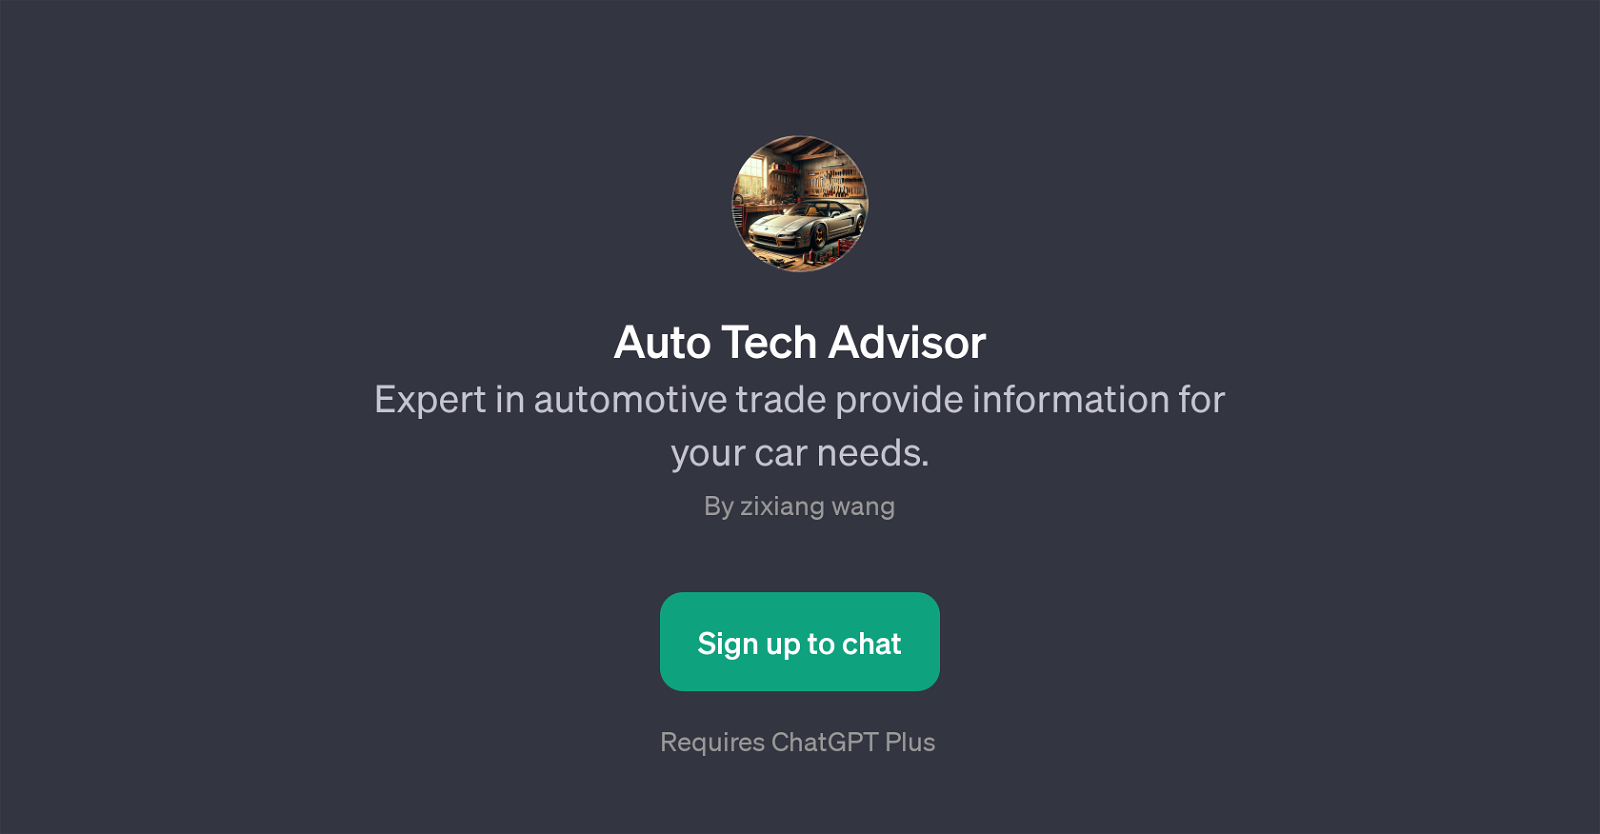 Auto Tech Advisor website